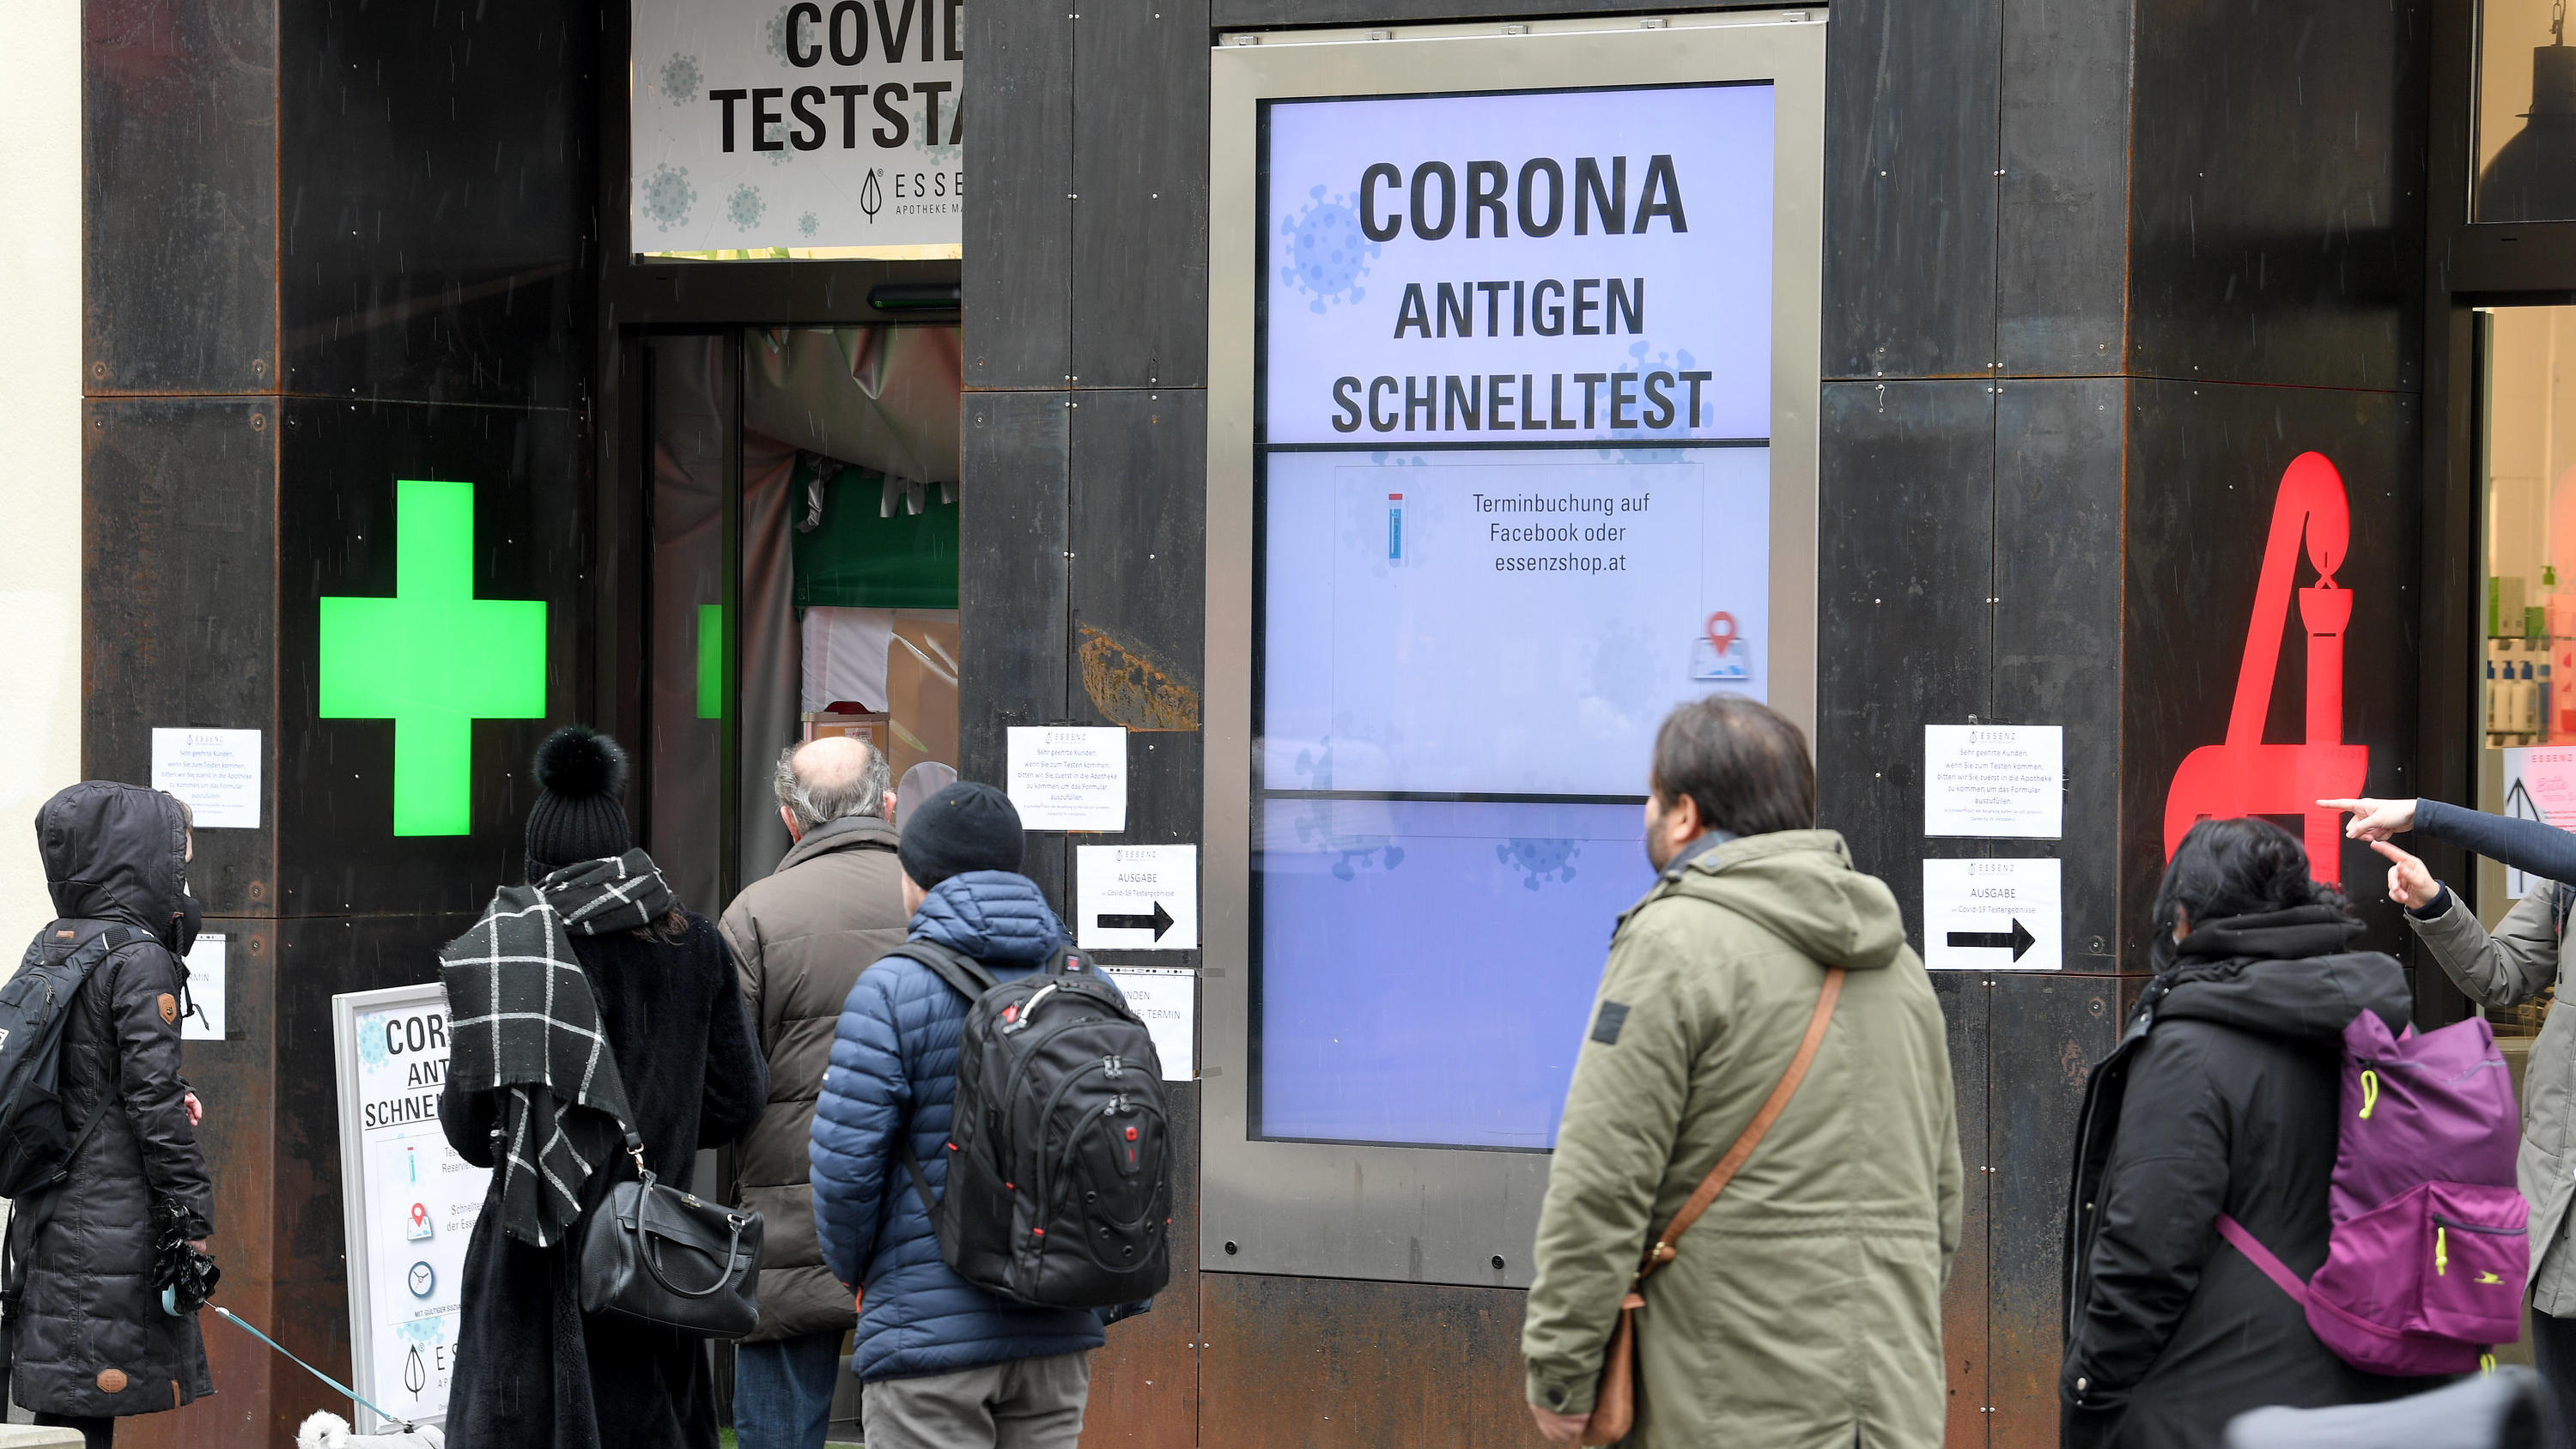 08.02.2021, Österreich, Wien: Menschen warten vor einer Covid-Teststation in einer Apotheke, um sich mit Antigen-Schnelltests auf das Coronavirus testen zu lassen. Nach sechs Wochen Lockdown aufgrund der Corona-Pandemie öffnen in Österreich ab 08.02.